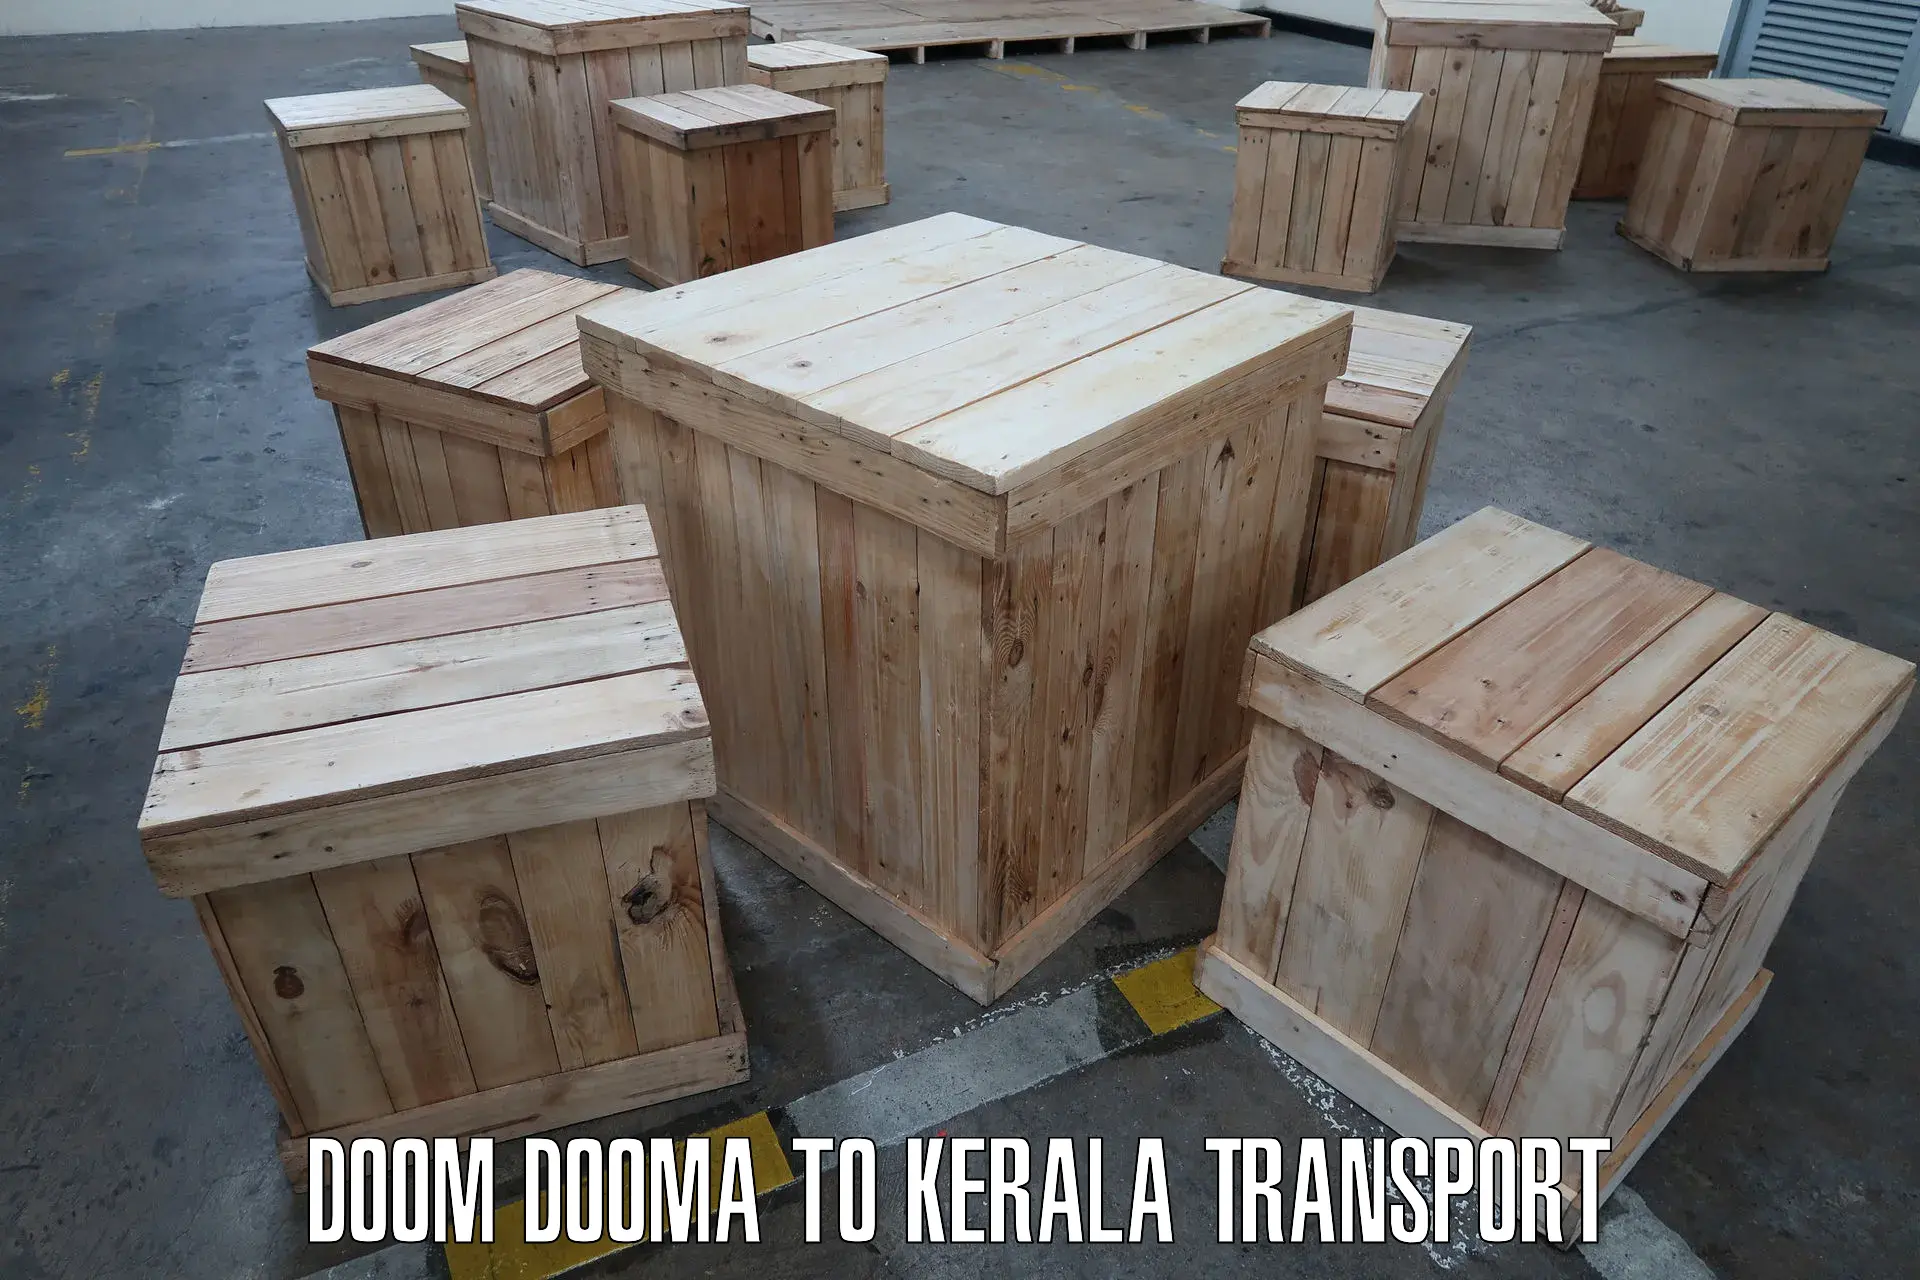 Delivery service Doom Dooma to Piravom